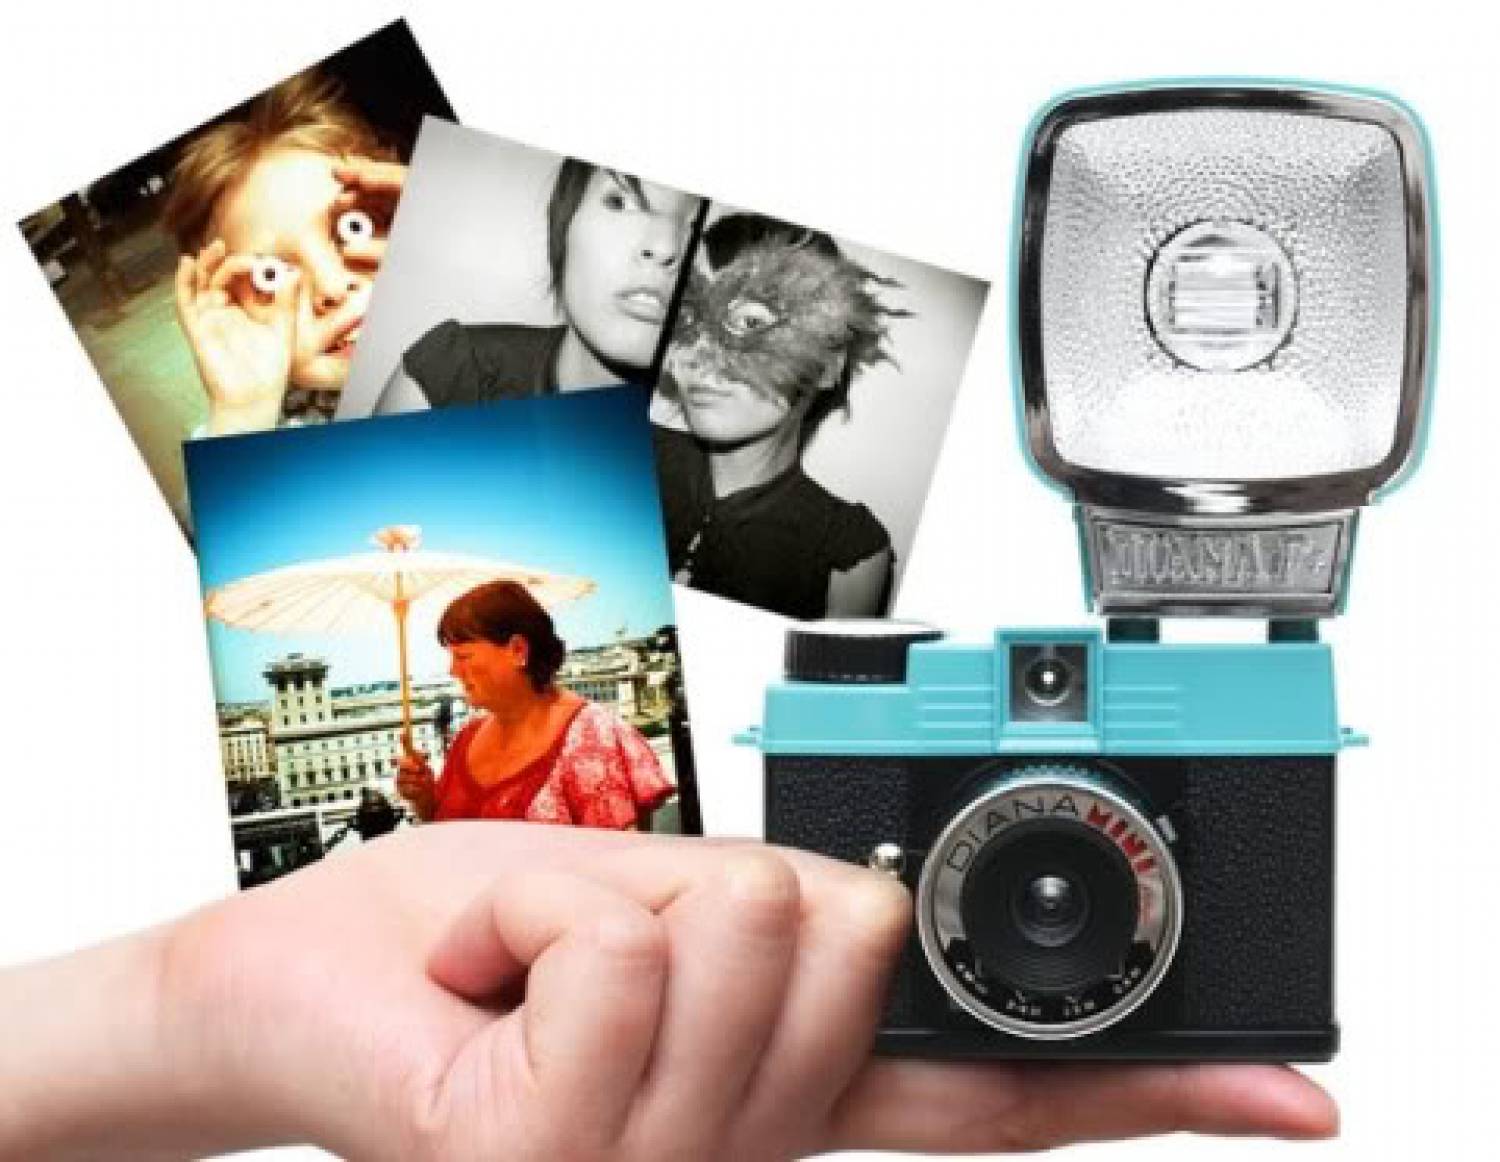 Lomography Diana Mini Camera